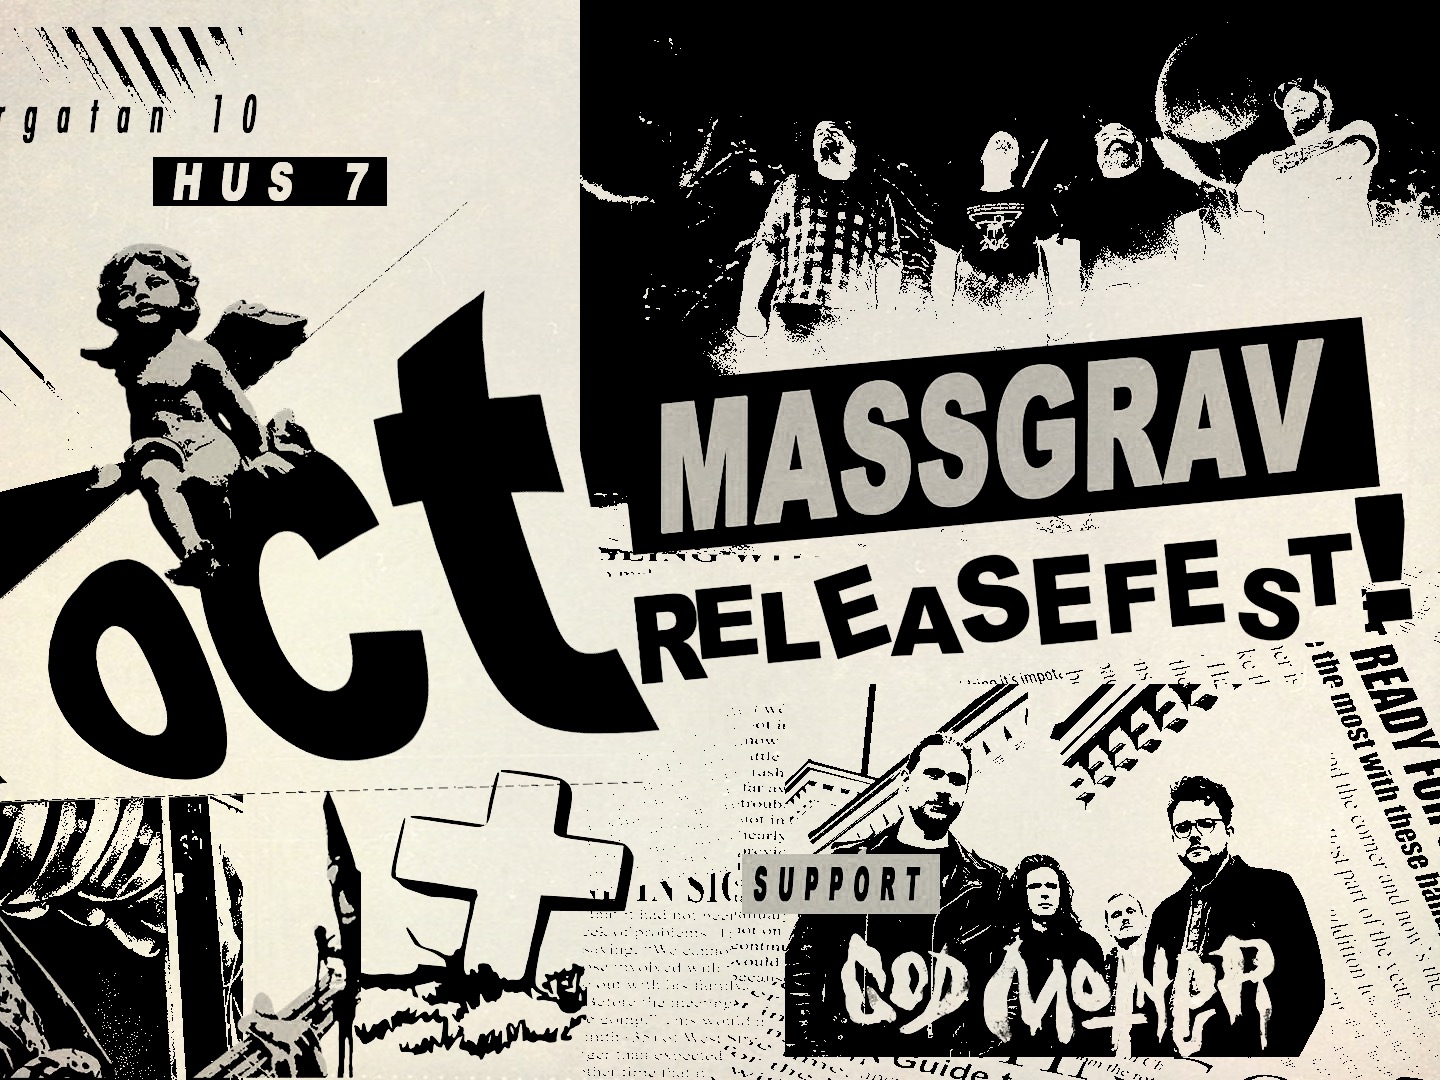 Massgrav Releasefest!